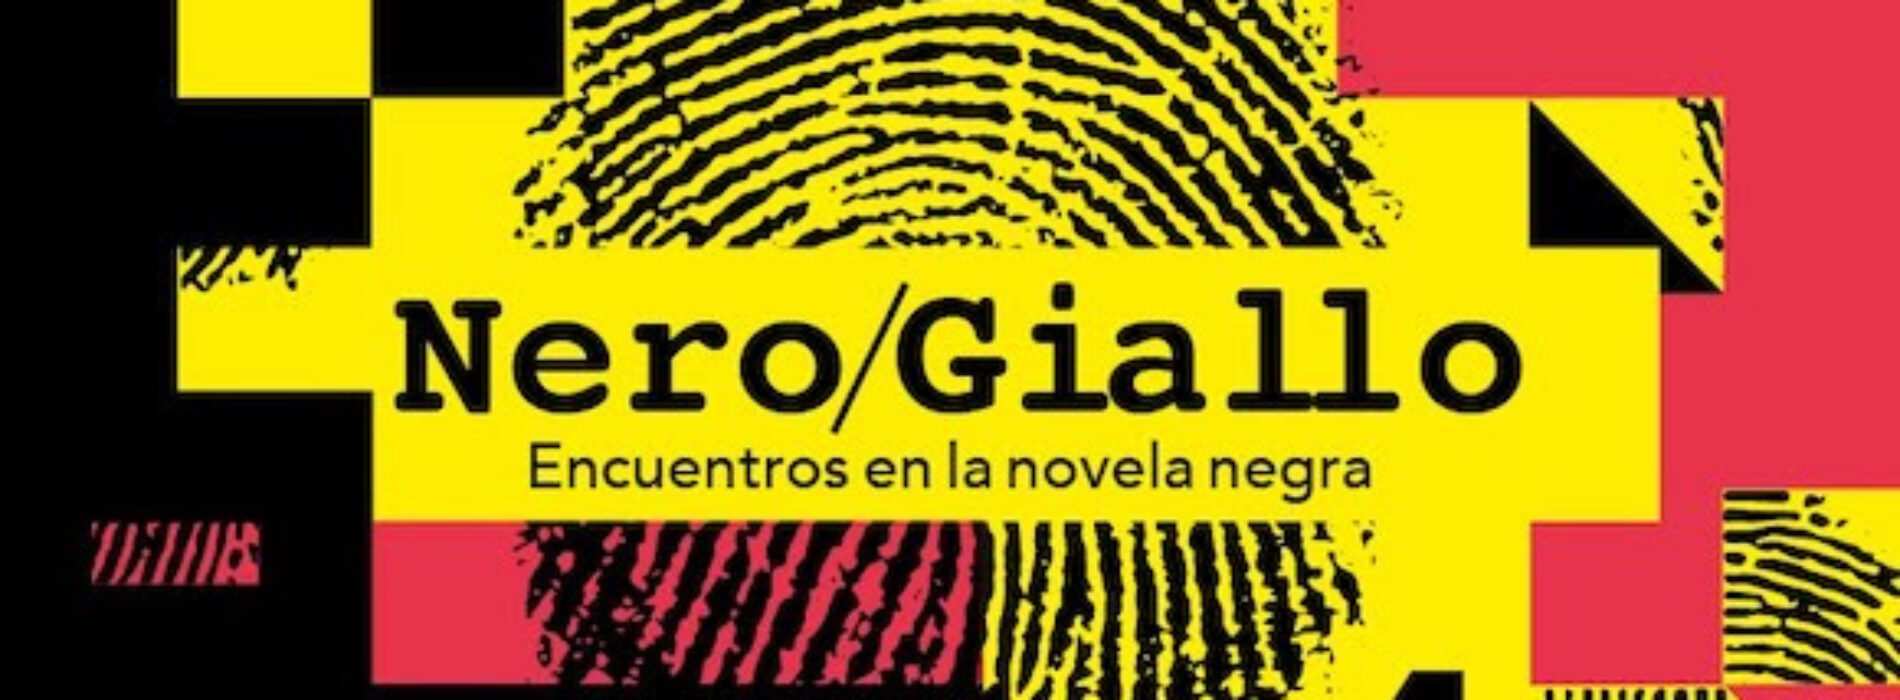 Nero/Giallo, al Cervantes la “novela negra” viaggia sui social